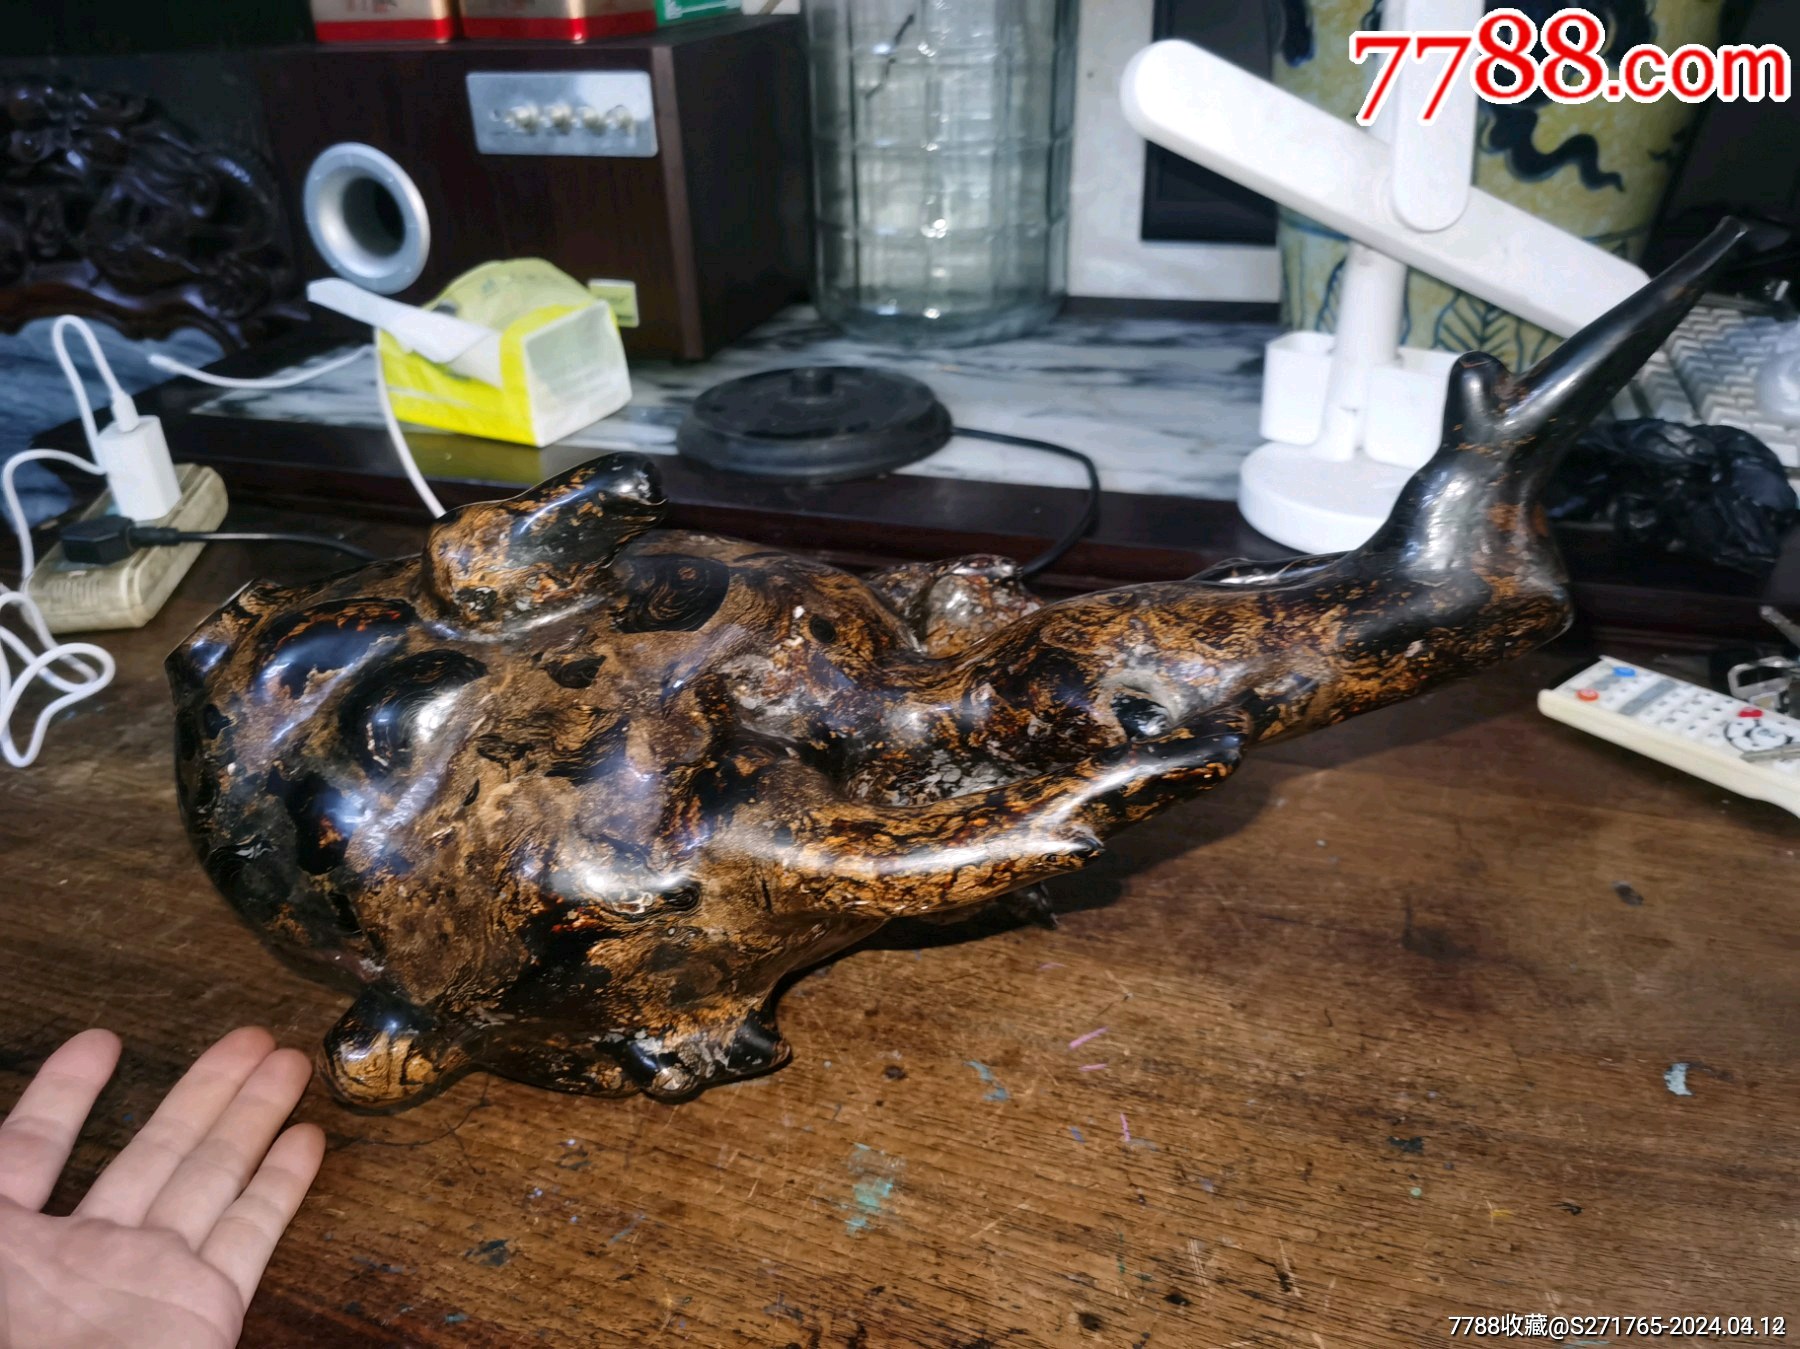 绝世罕见的老海柳烟嘴摆件重75斤是金蟾的造型纹理漂亮造型独特如图